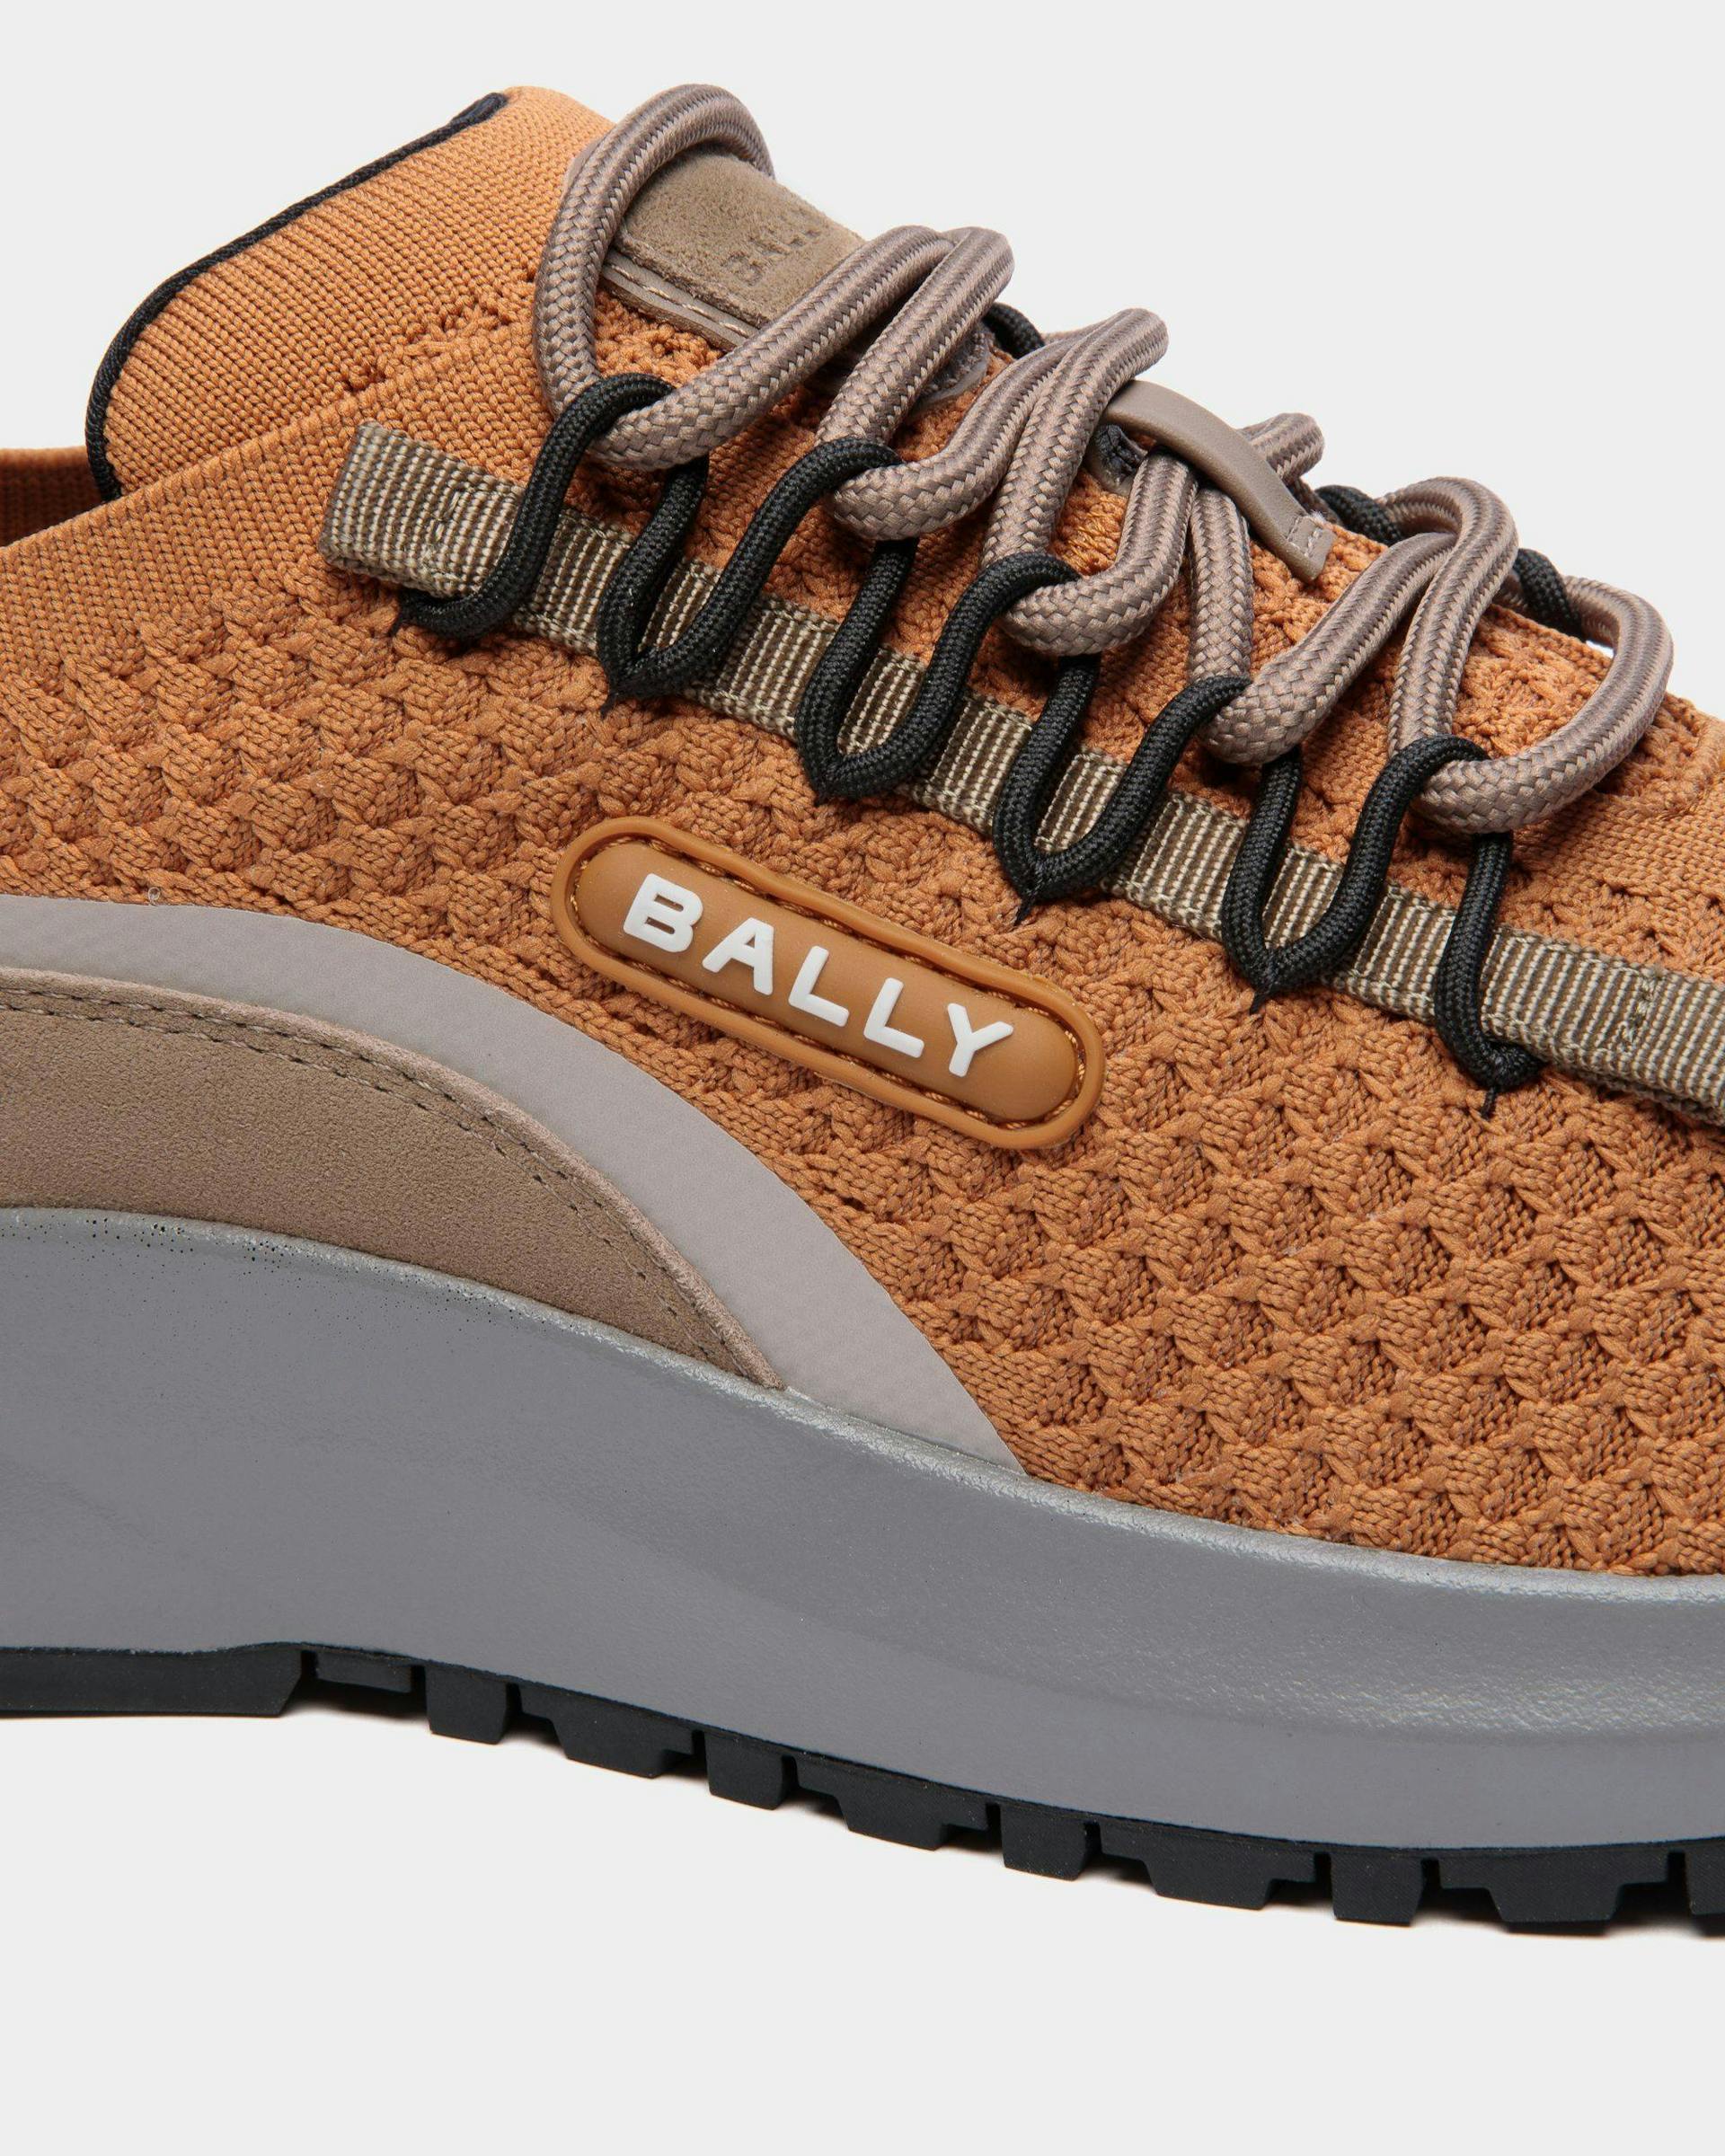 Men's Outline Sneaker in Brown Nylon | Bally | Still Life Detail